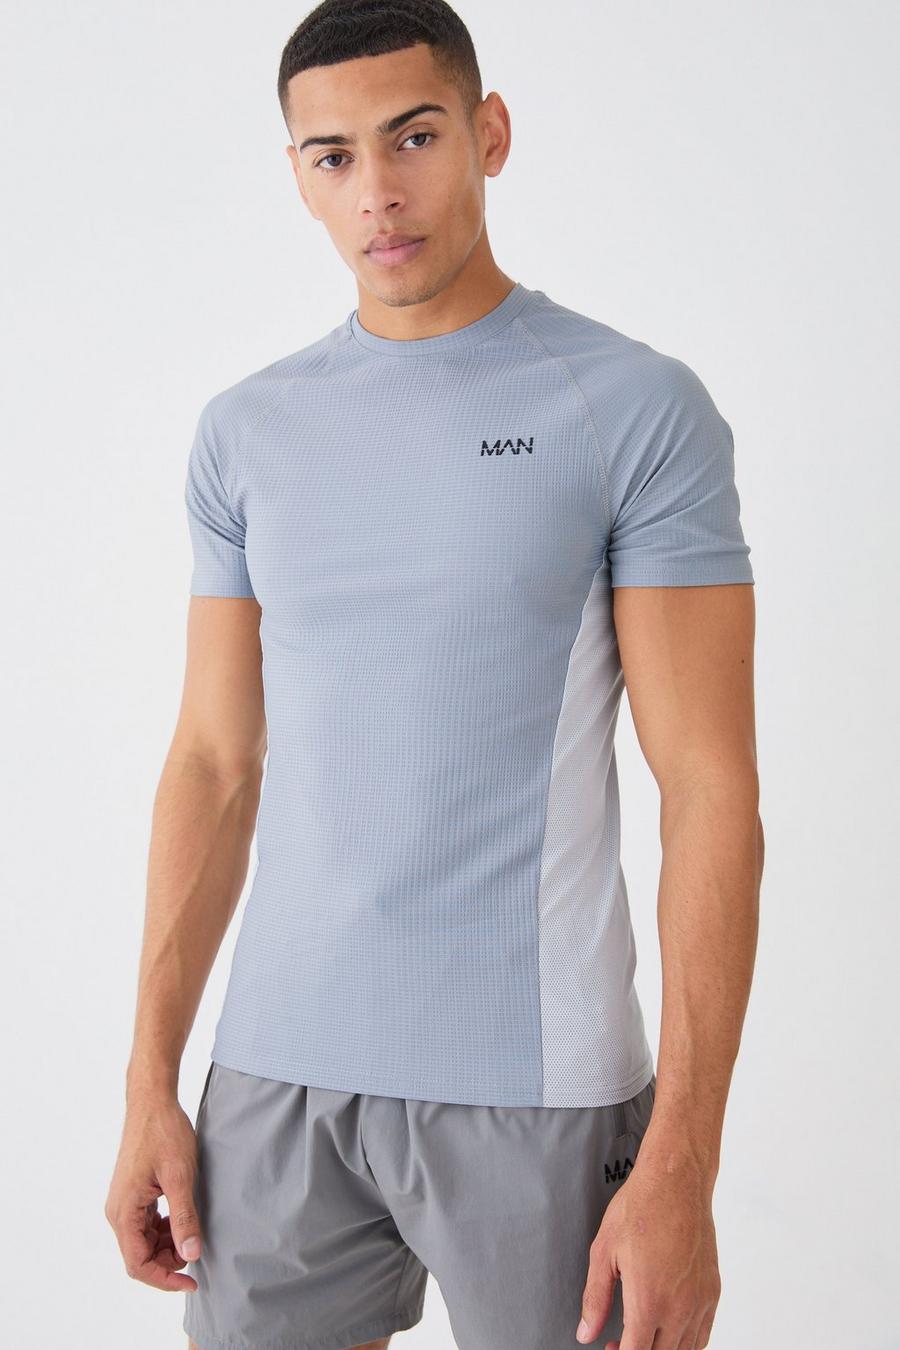 Camiseta MAN Active ajustada al músculo con colores en bloque, Charcoal